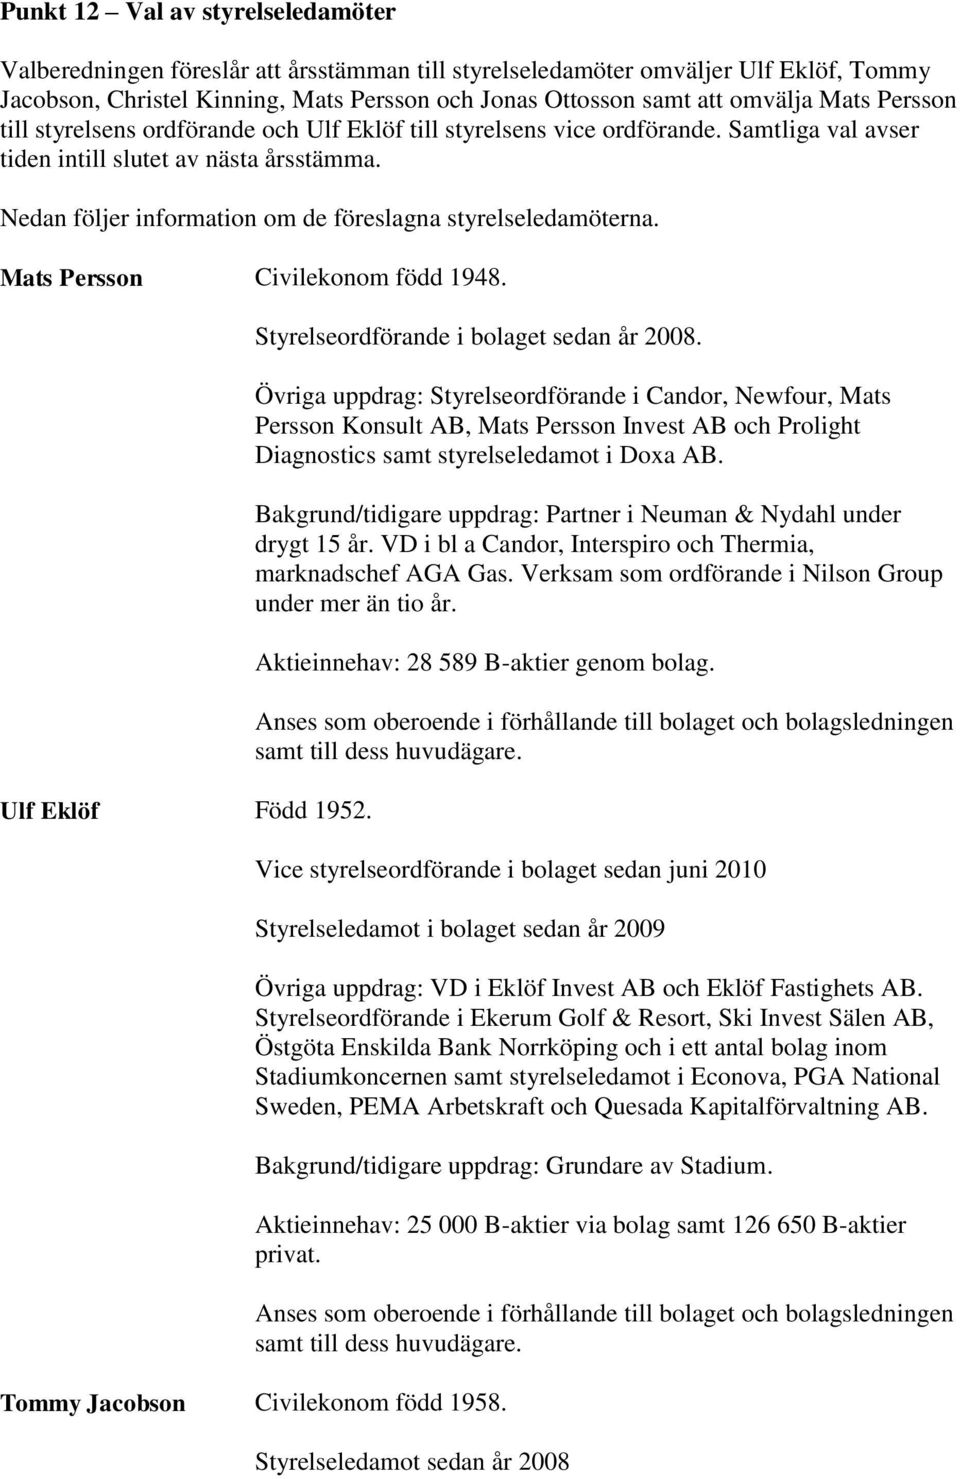 Nedan följer information om de föreslagna styrelseledamöterna. Mats Persson Civilekonom född 1948. Ulf Eklöf Född 1952. Styrelseordförande i bolaget sedan år 2008.